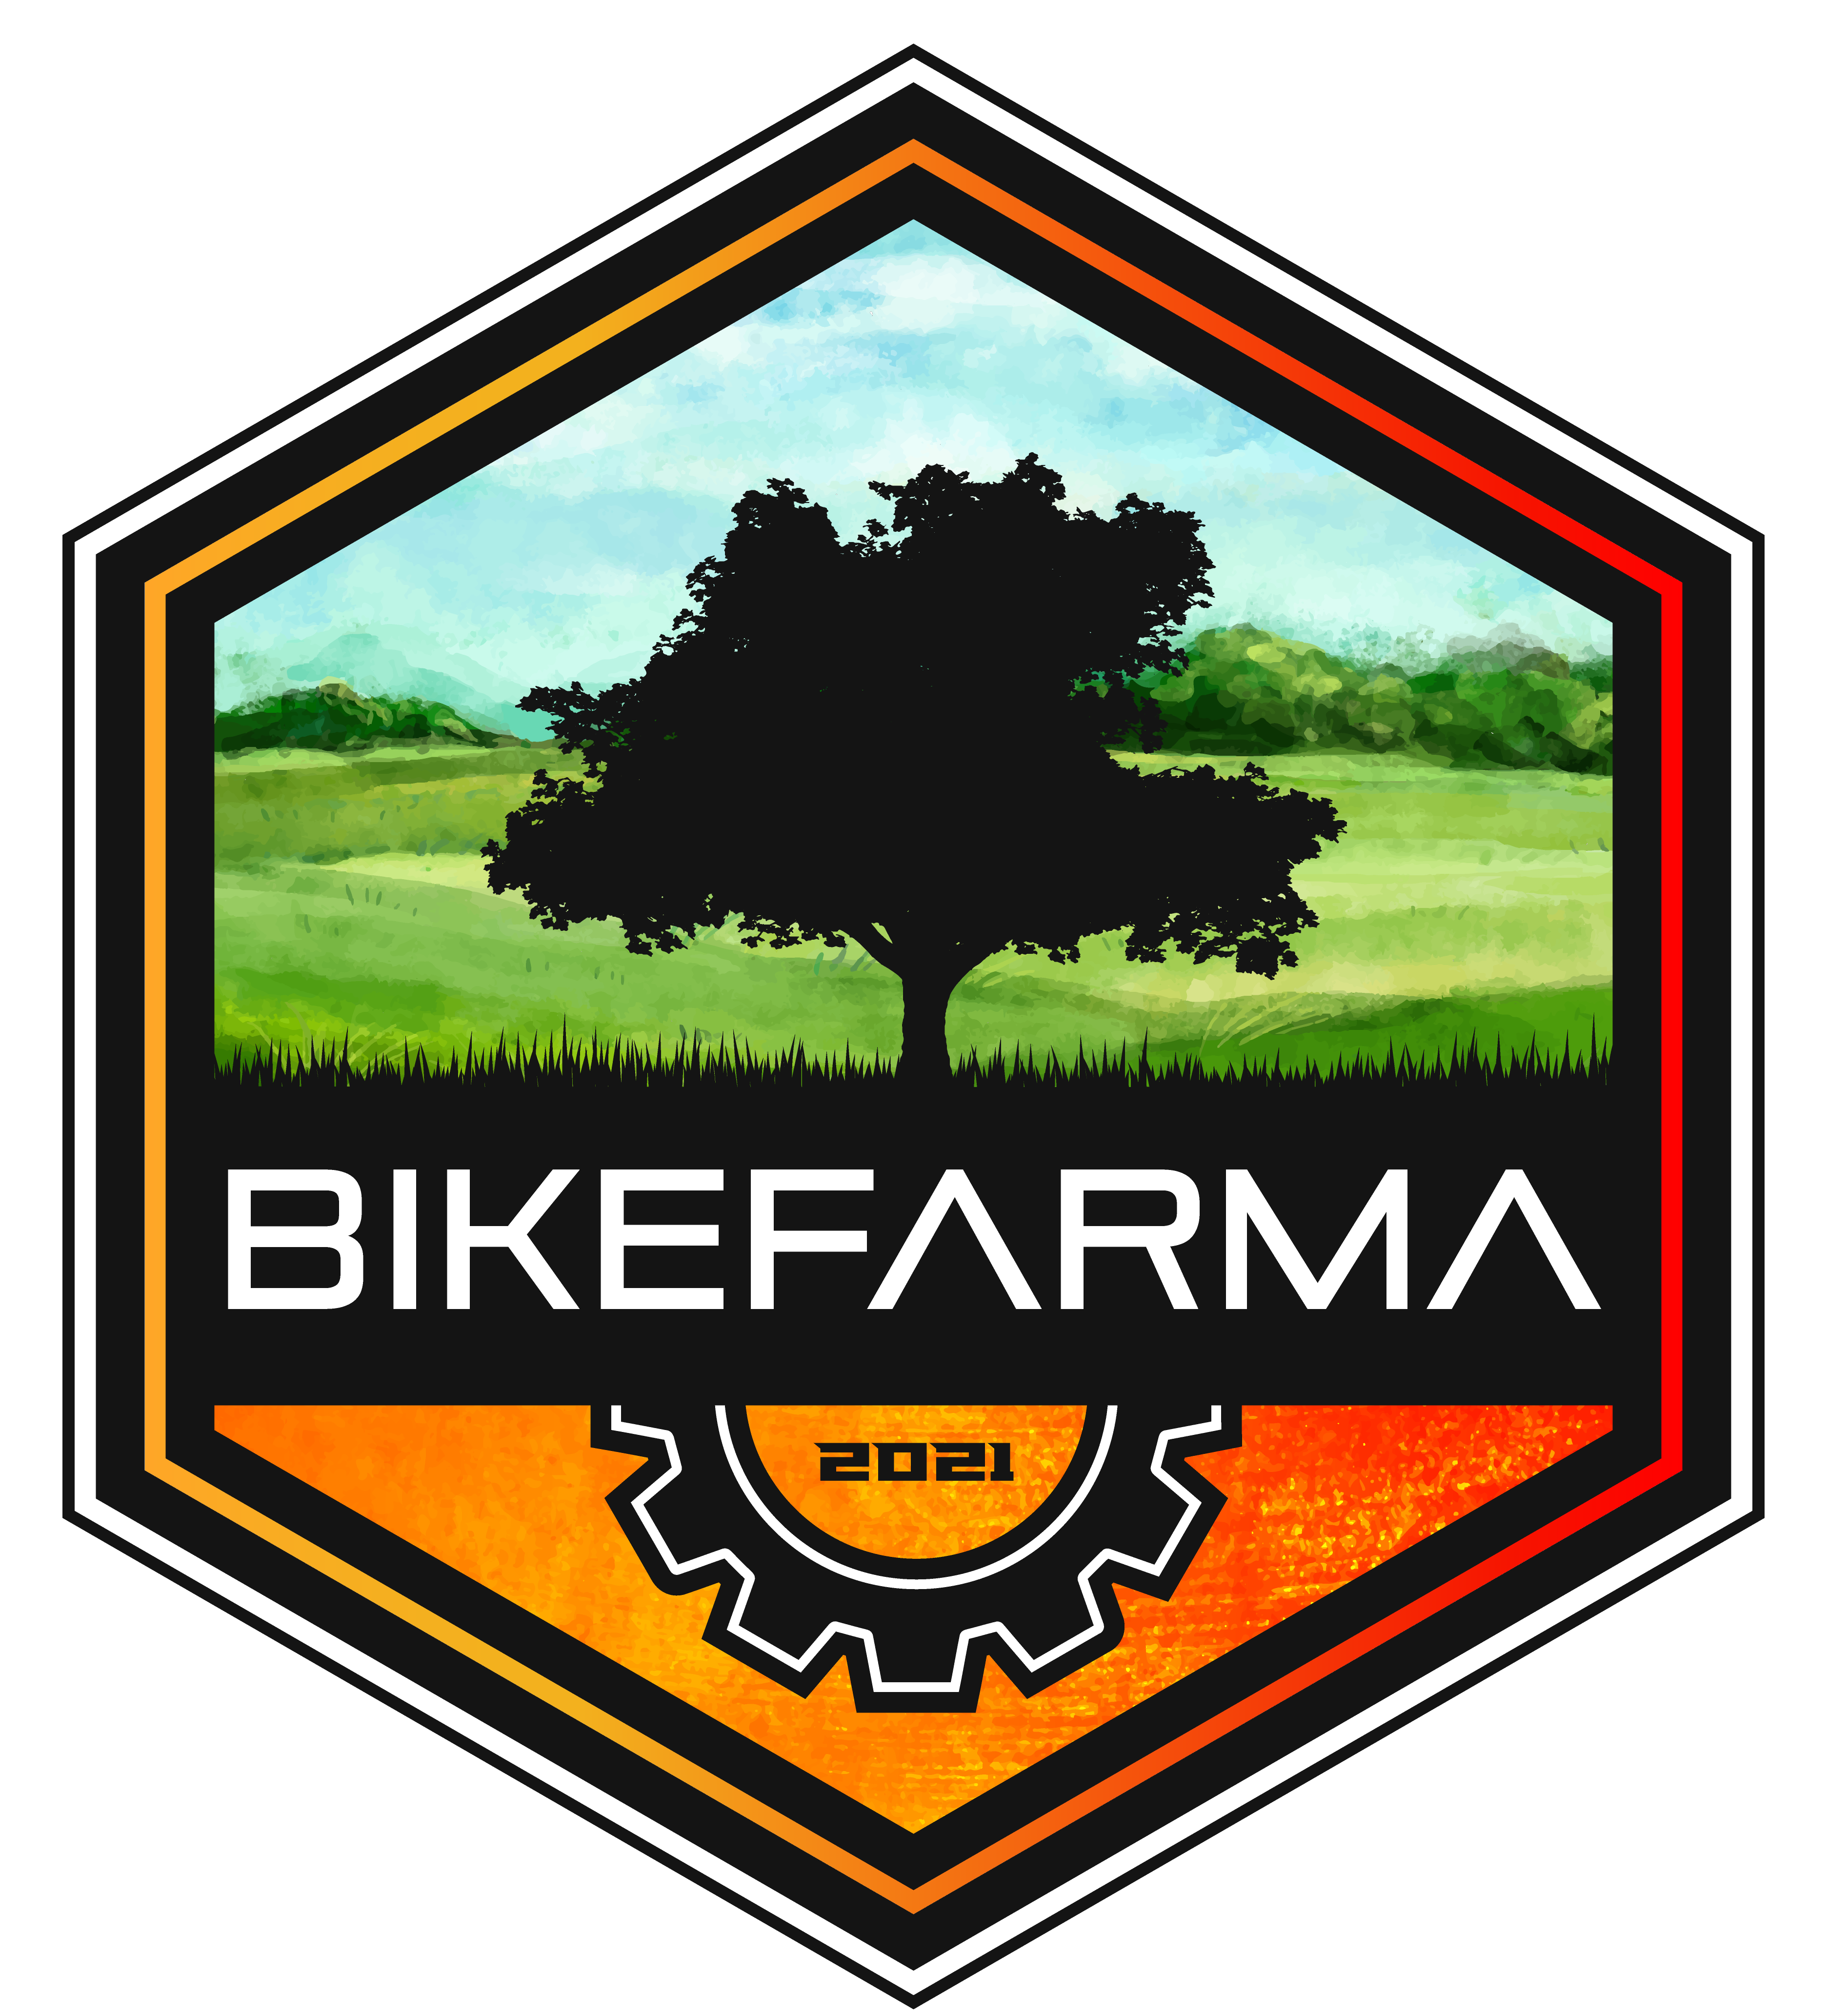 BikeFarma